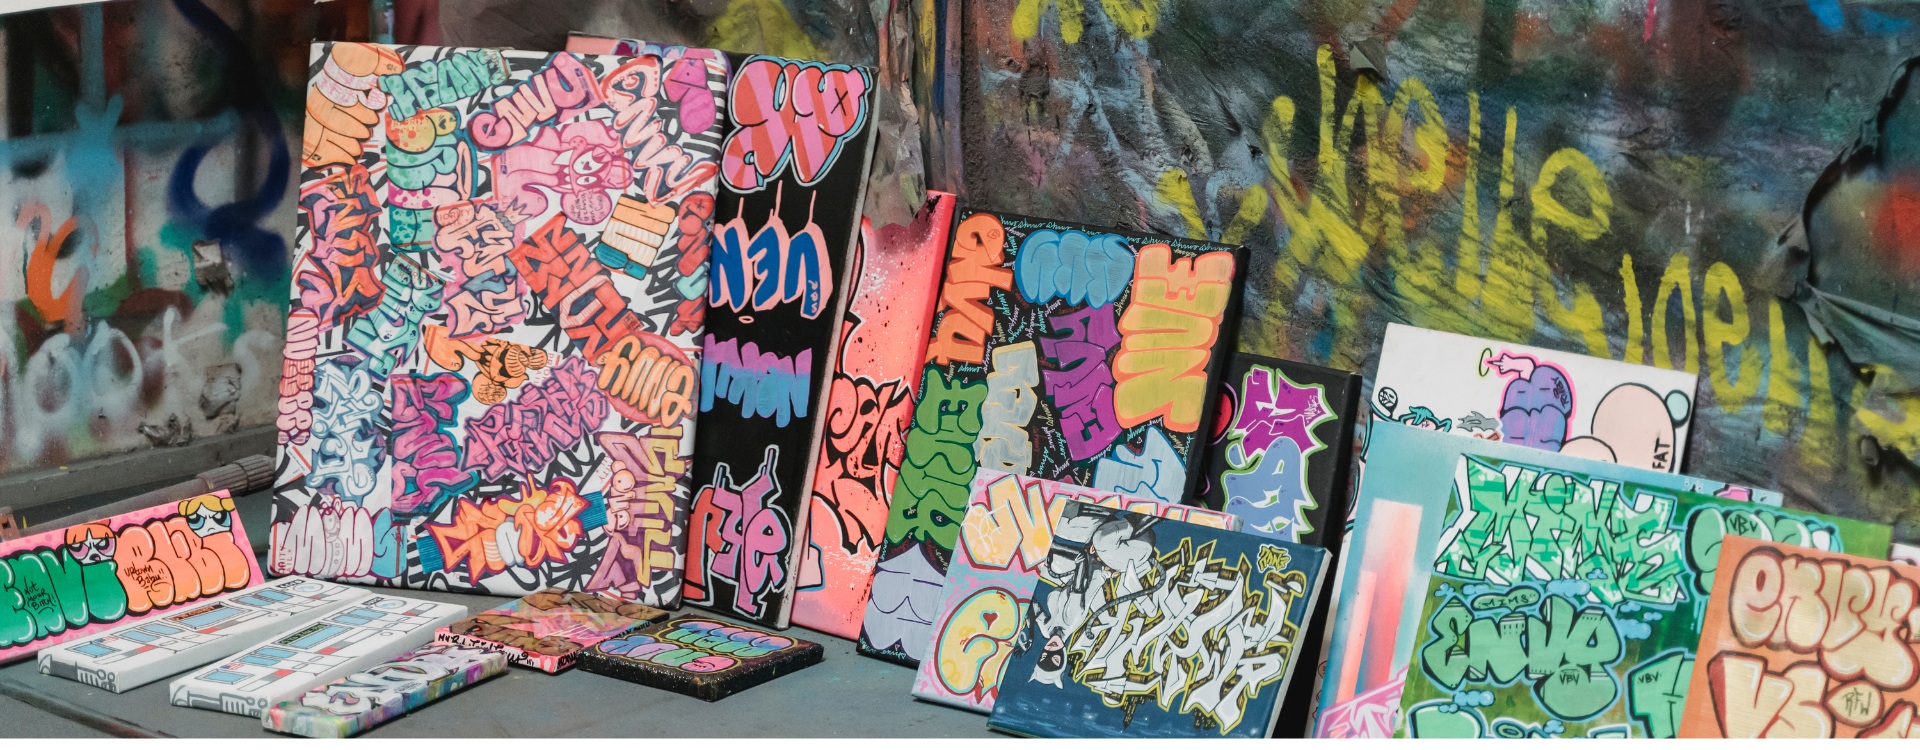 Exposición de cuadros de grafittis